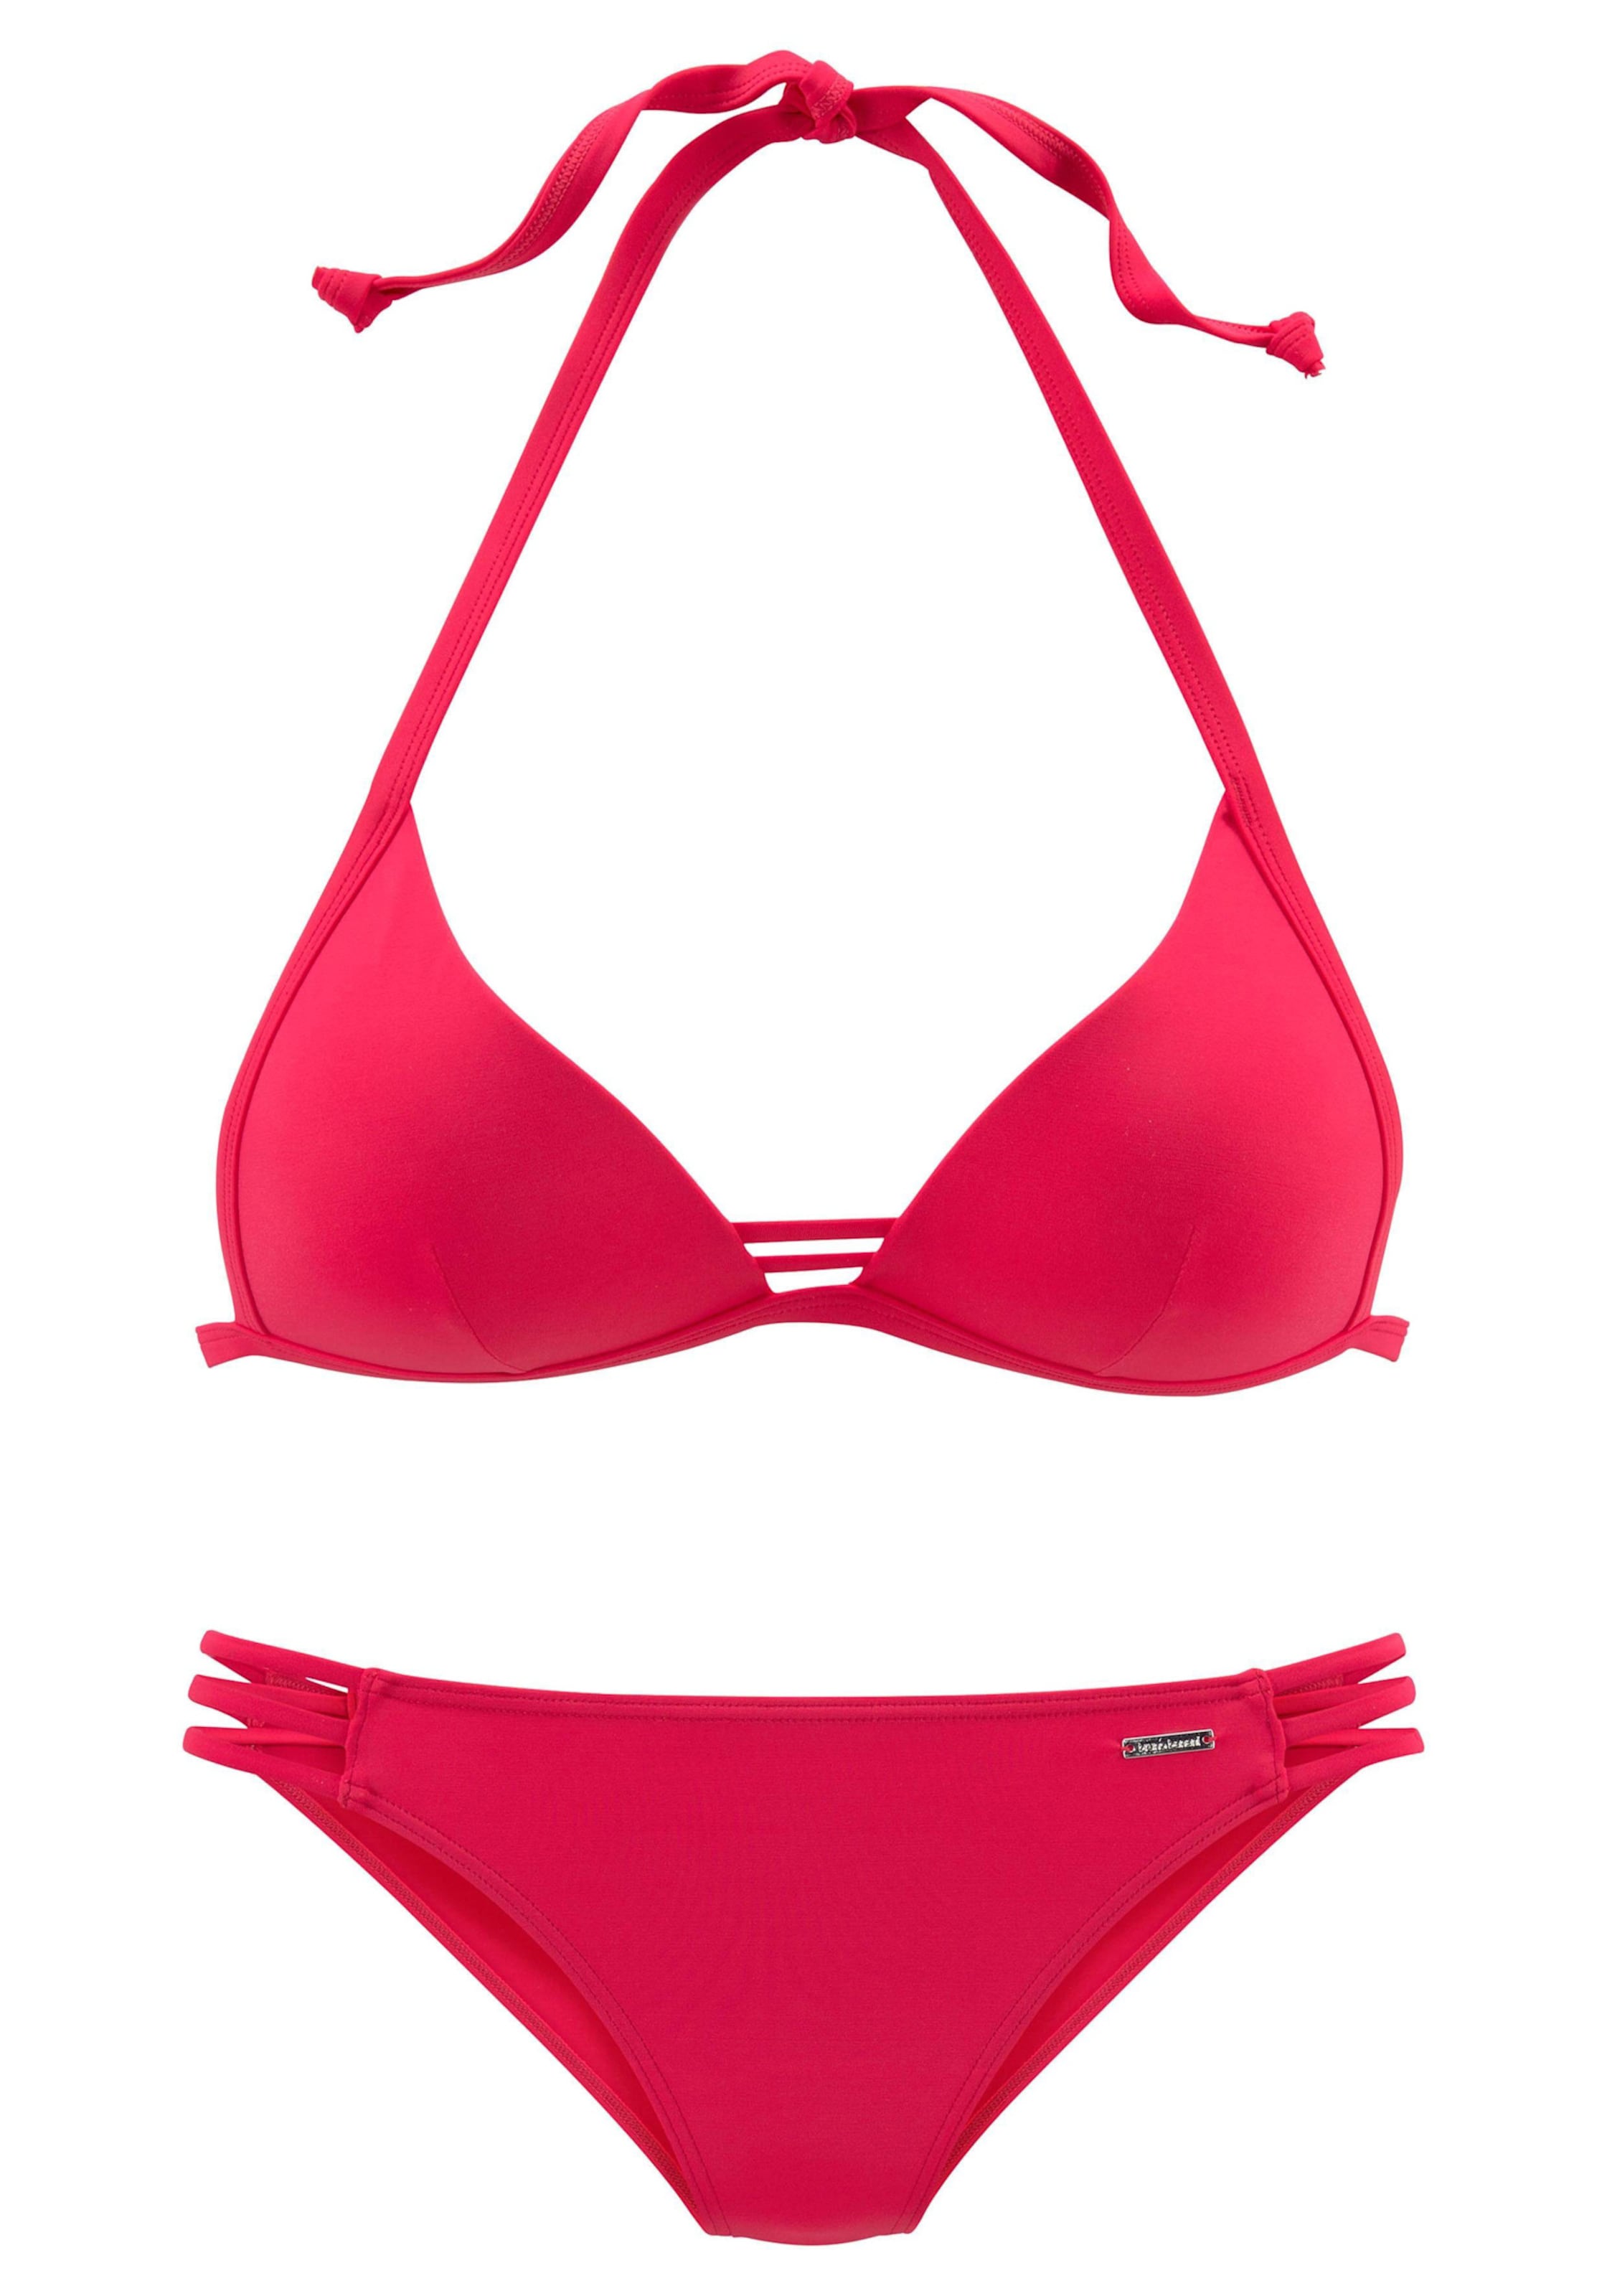 Look at günstig Kaufen-Triangel-Bikini in rot von Bruno Banani. Triangel-Bikini in rot von Bruno Banani <![CDATA[Stylischer Look in 3 angesagten Unifarben. Eingearbeitete Softcups mit integrierter Verstärkung. Hose mit seitlichen Bändern.]]>. 